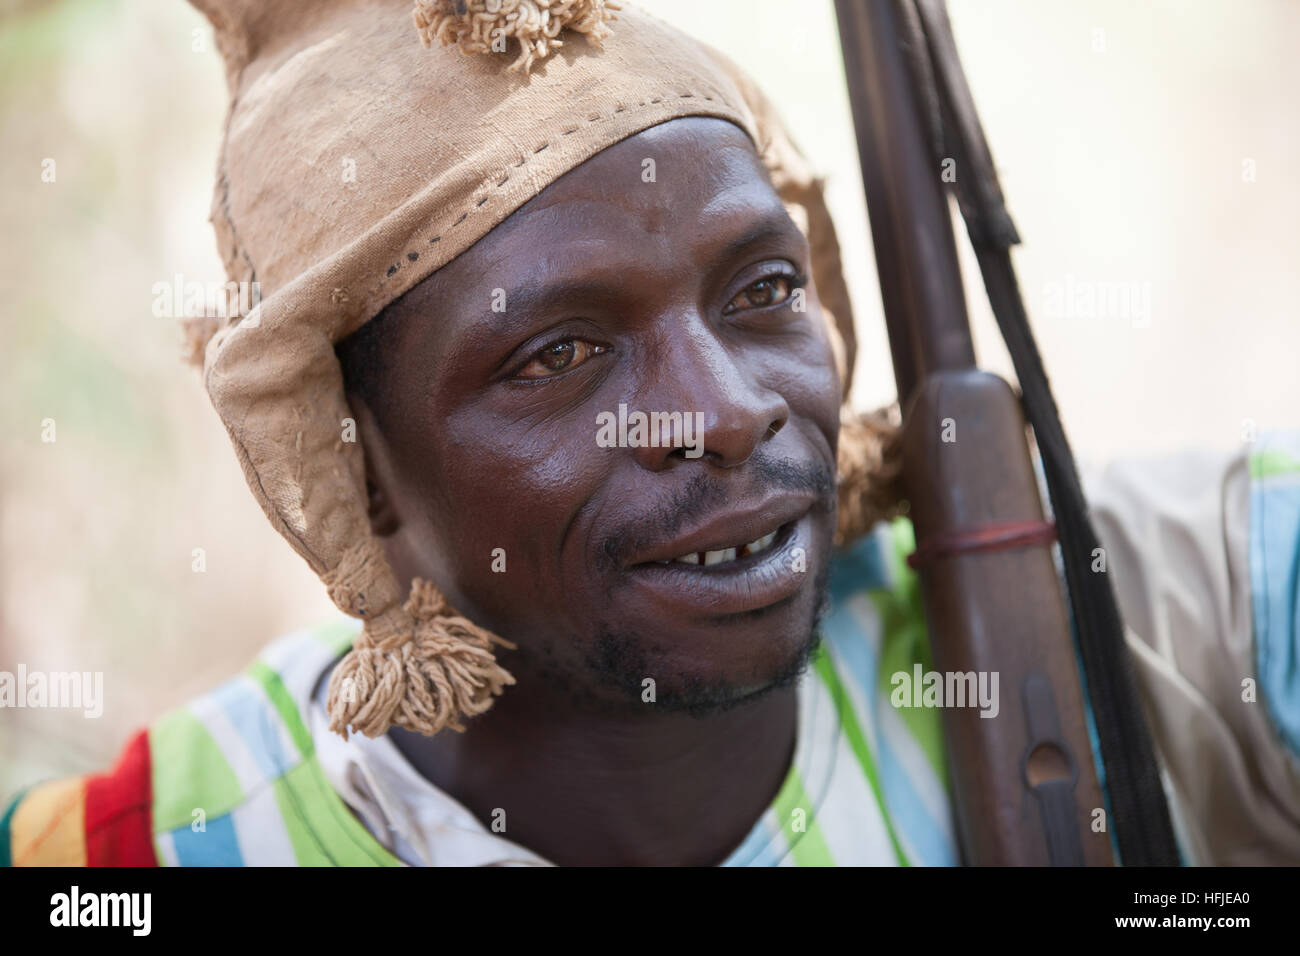 Gbderedou Baranama, Guinée, 2 mai 2015 ; un groupe de chasseurs du village avec leurs fusils. Ils chassent dans la forêt chaque jour. Banque D'Images